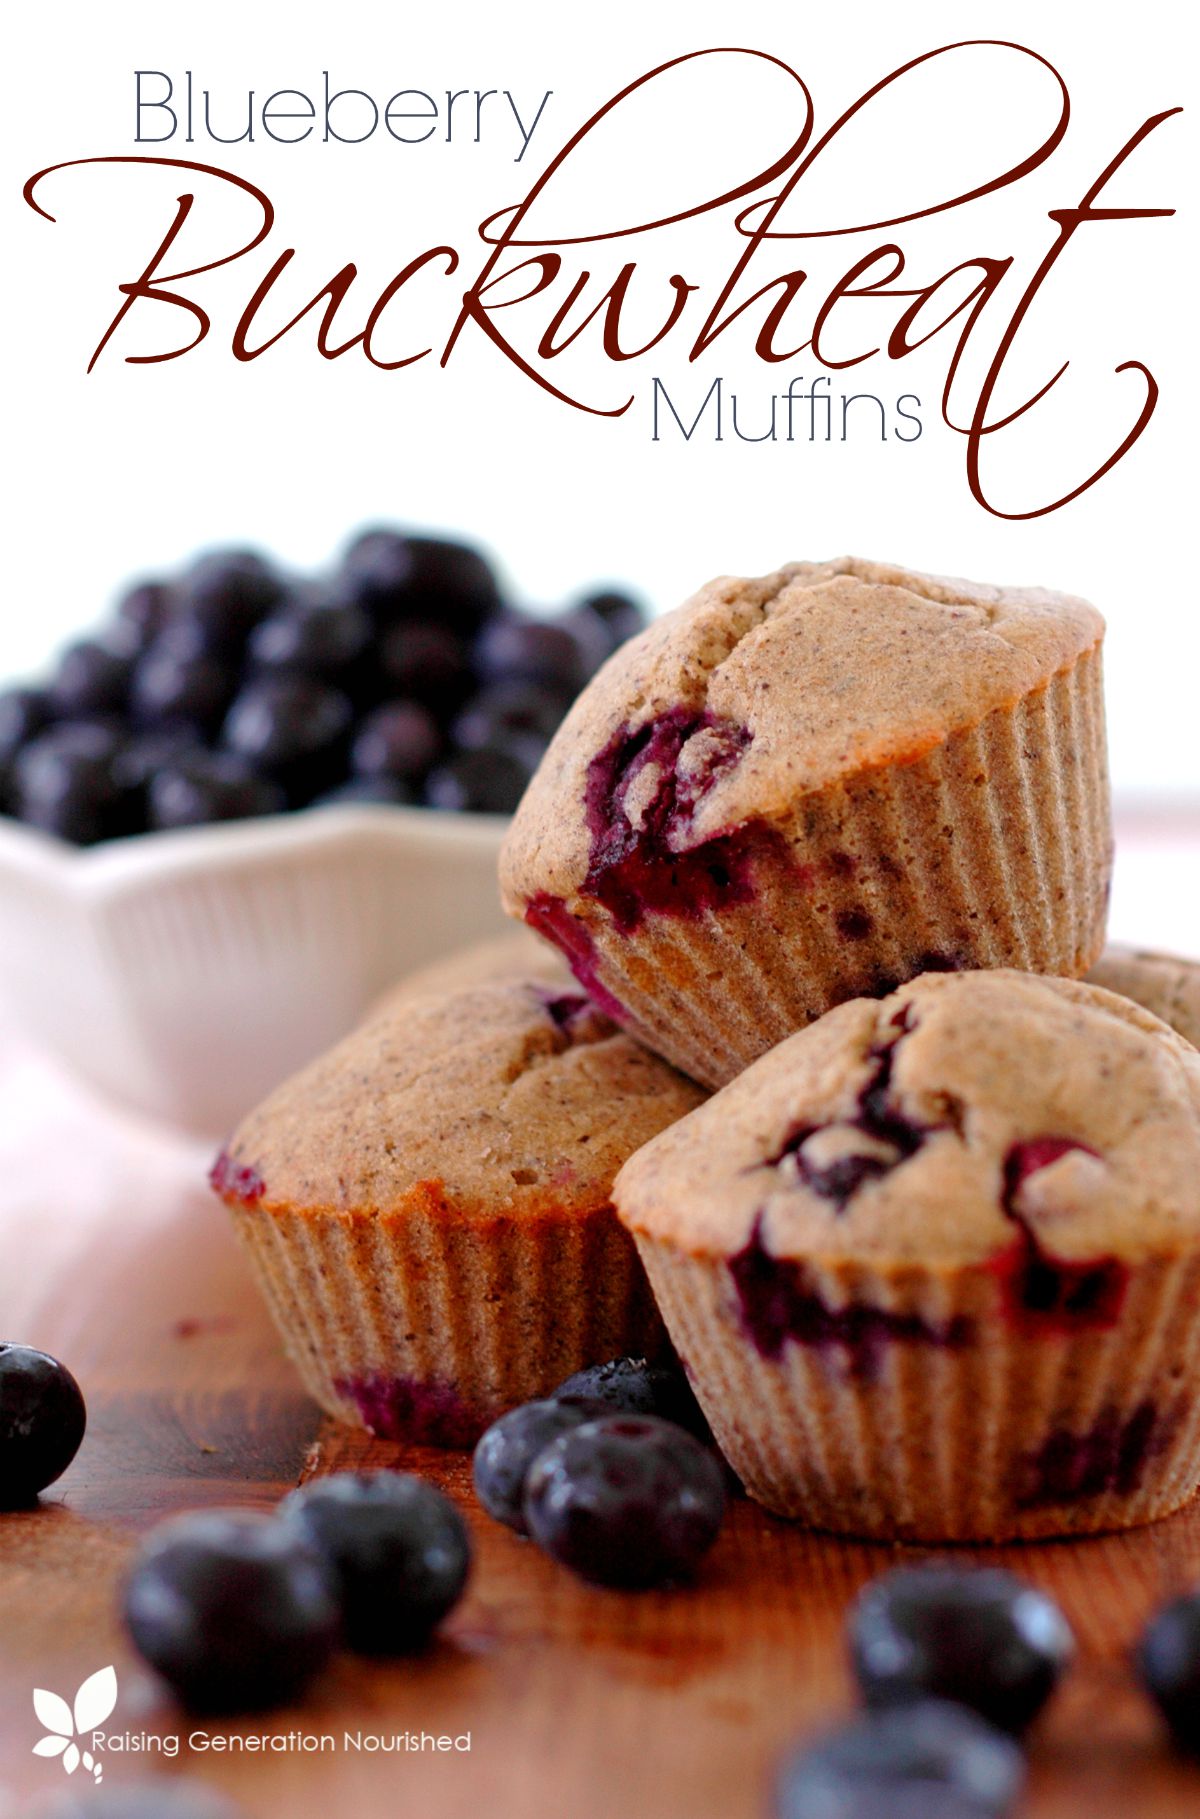 Blueberry Buckwheat Muffins